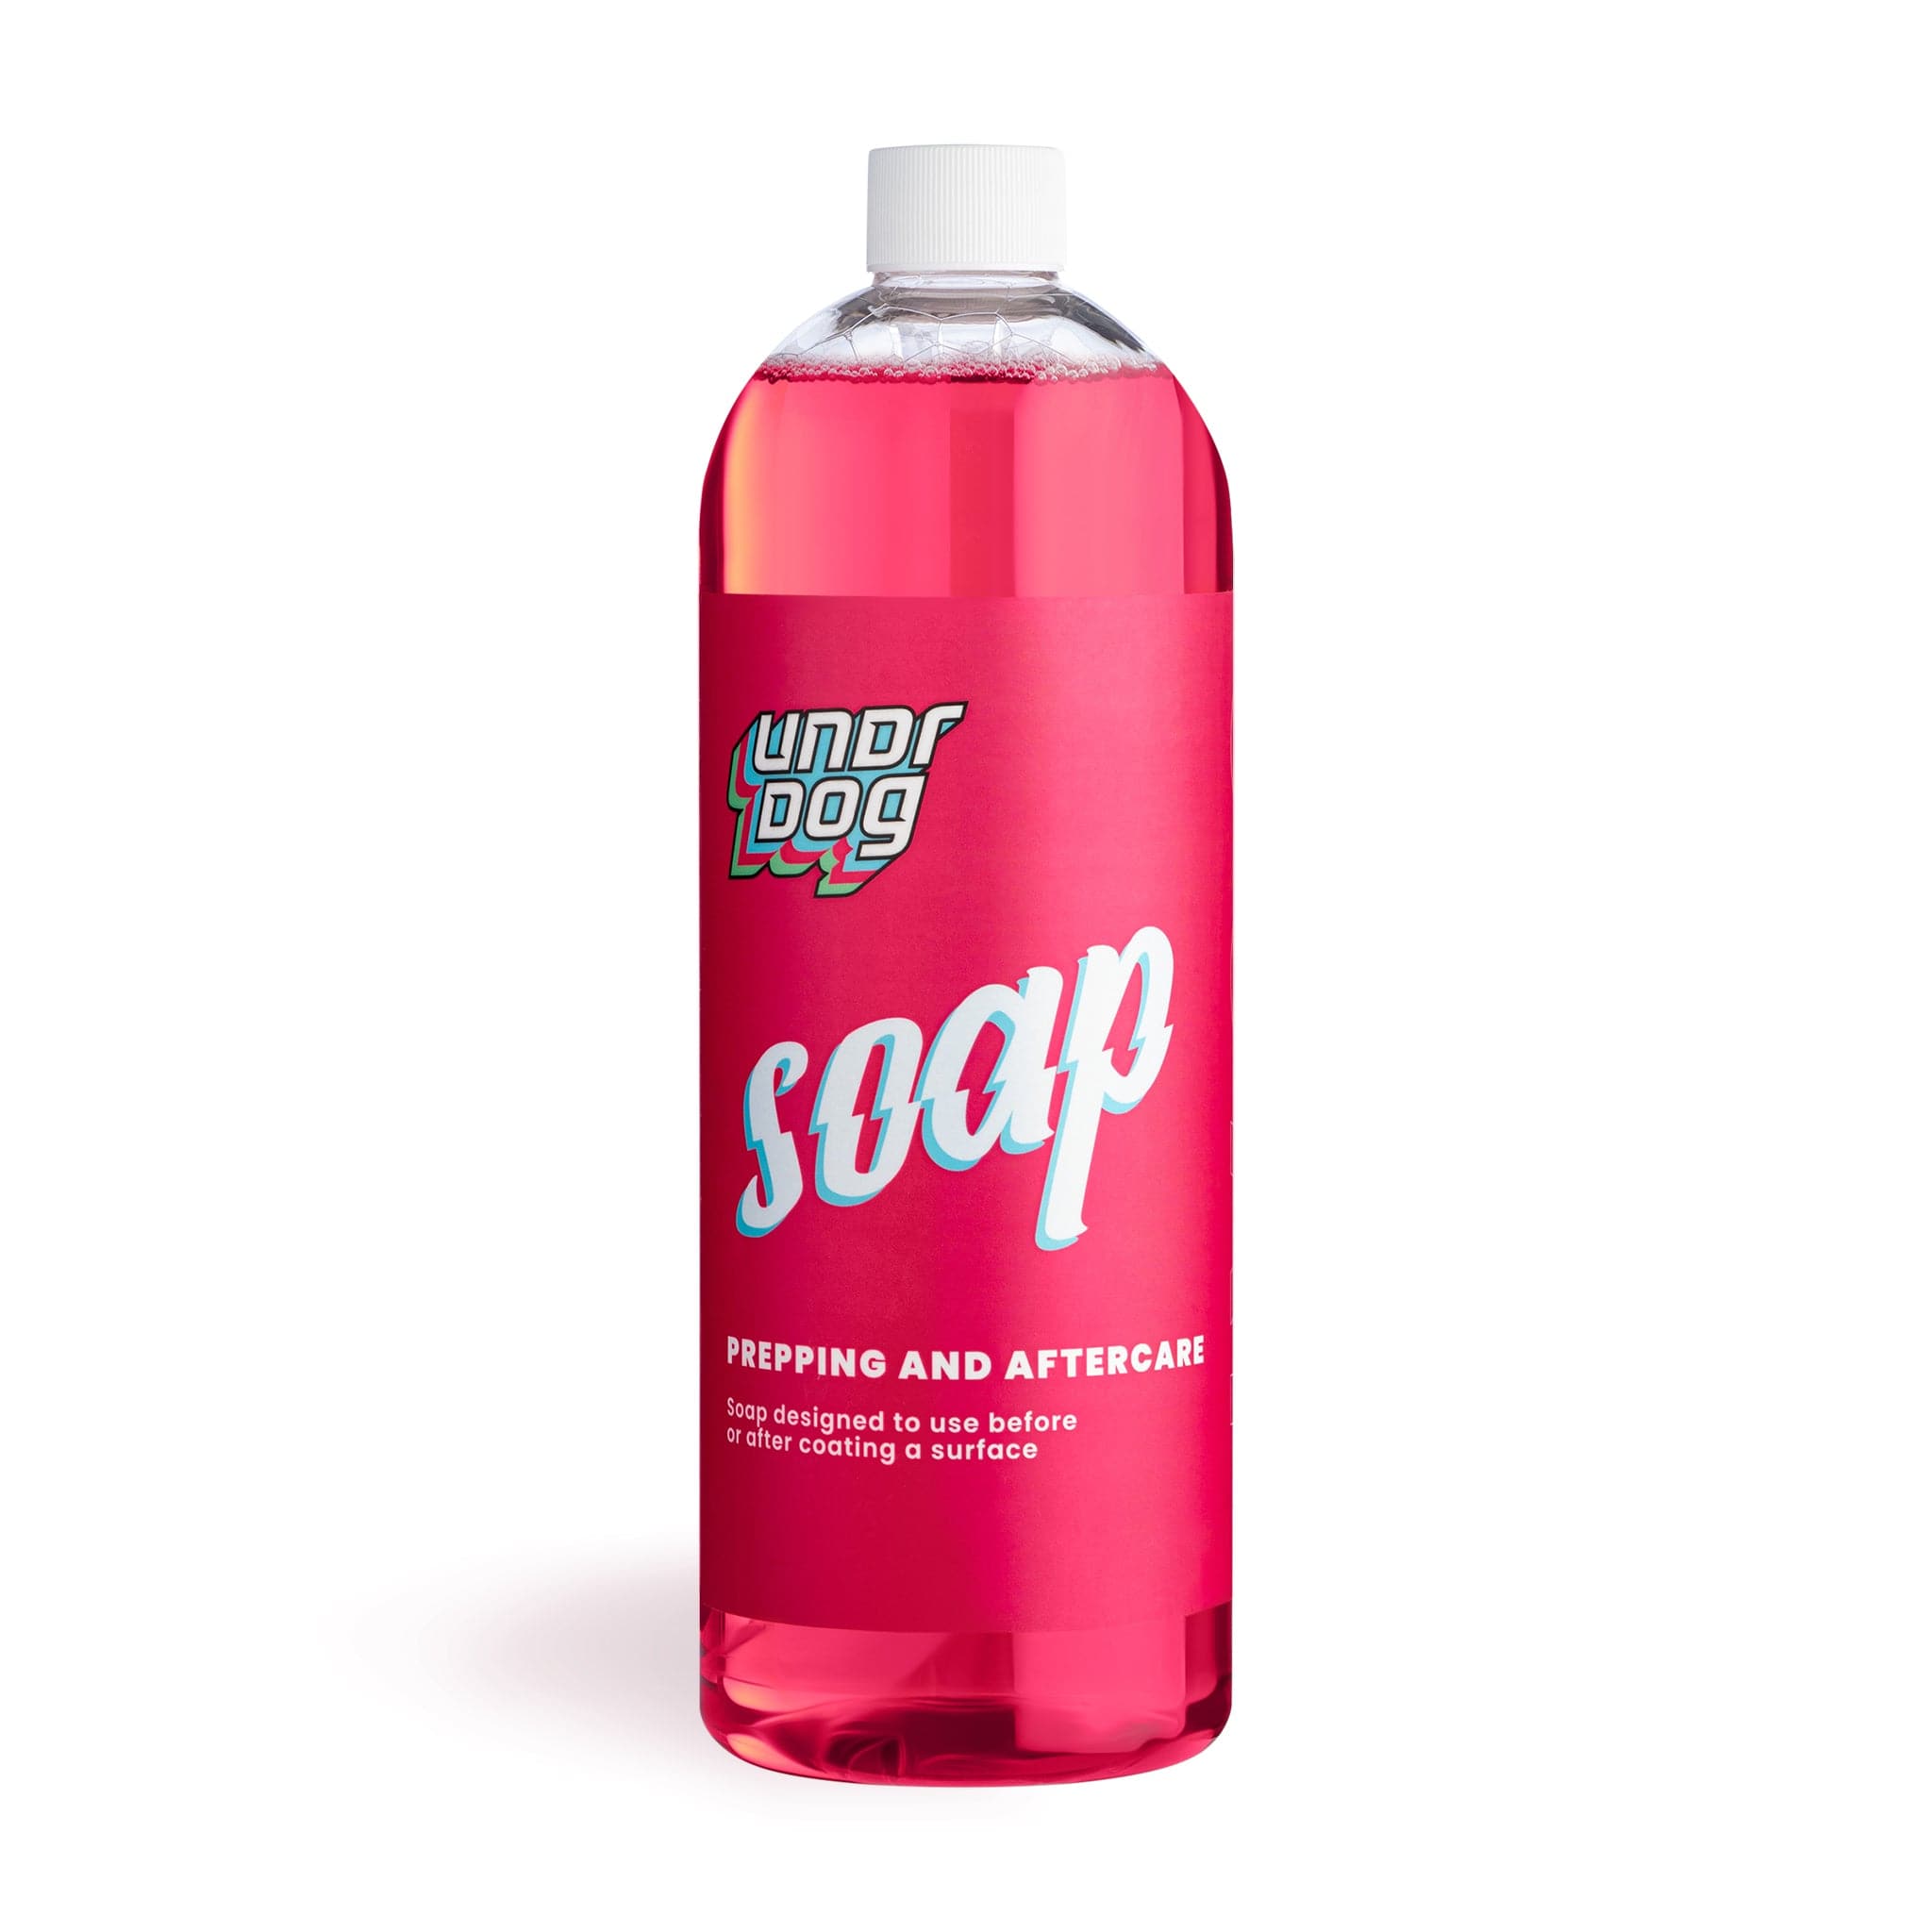 Car Wash Soap – Coats Products